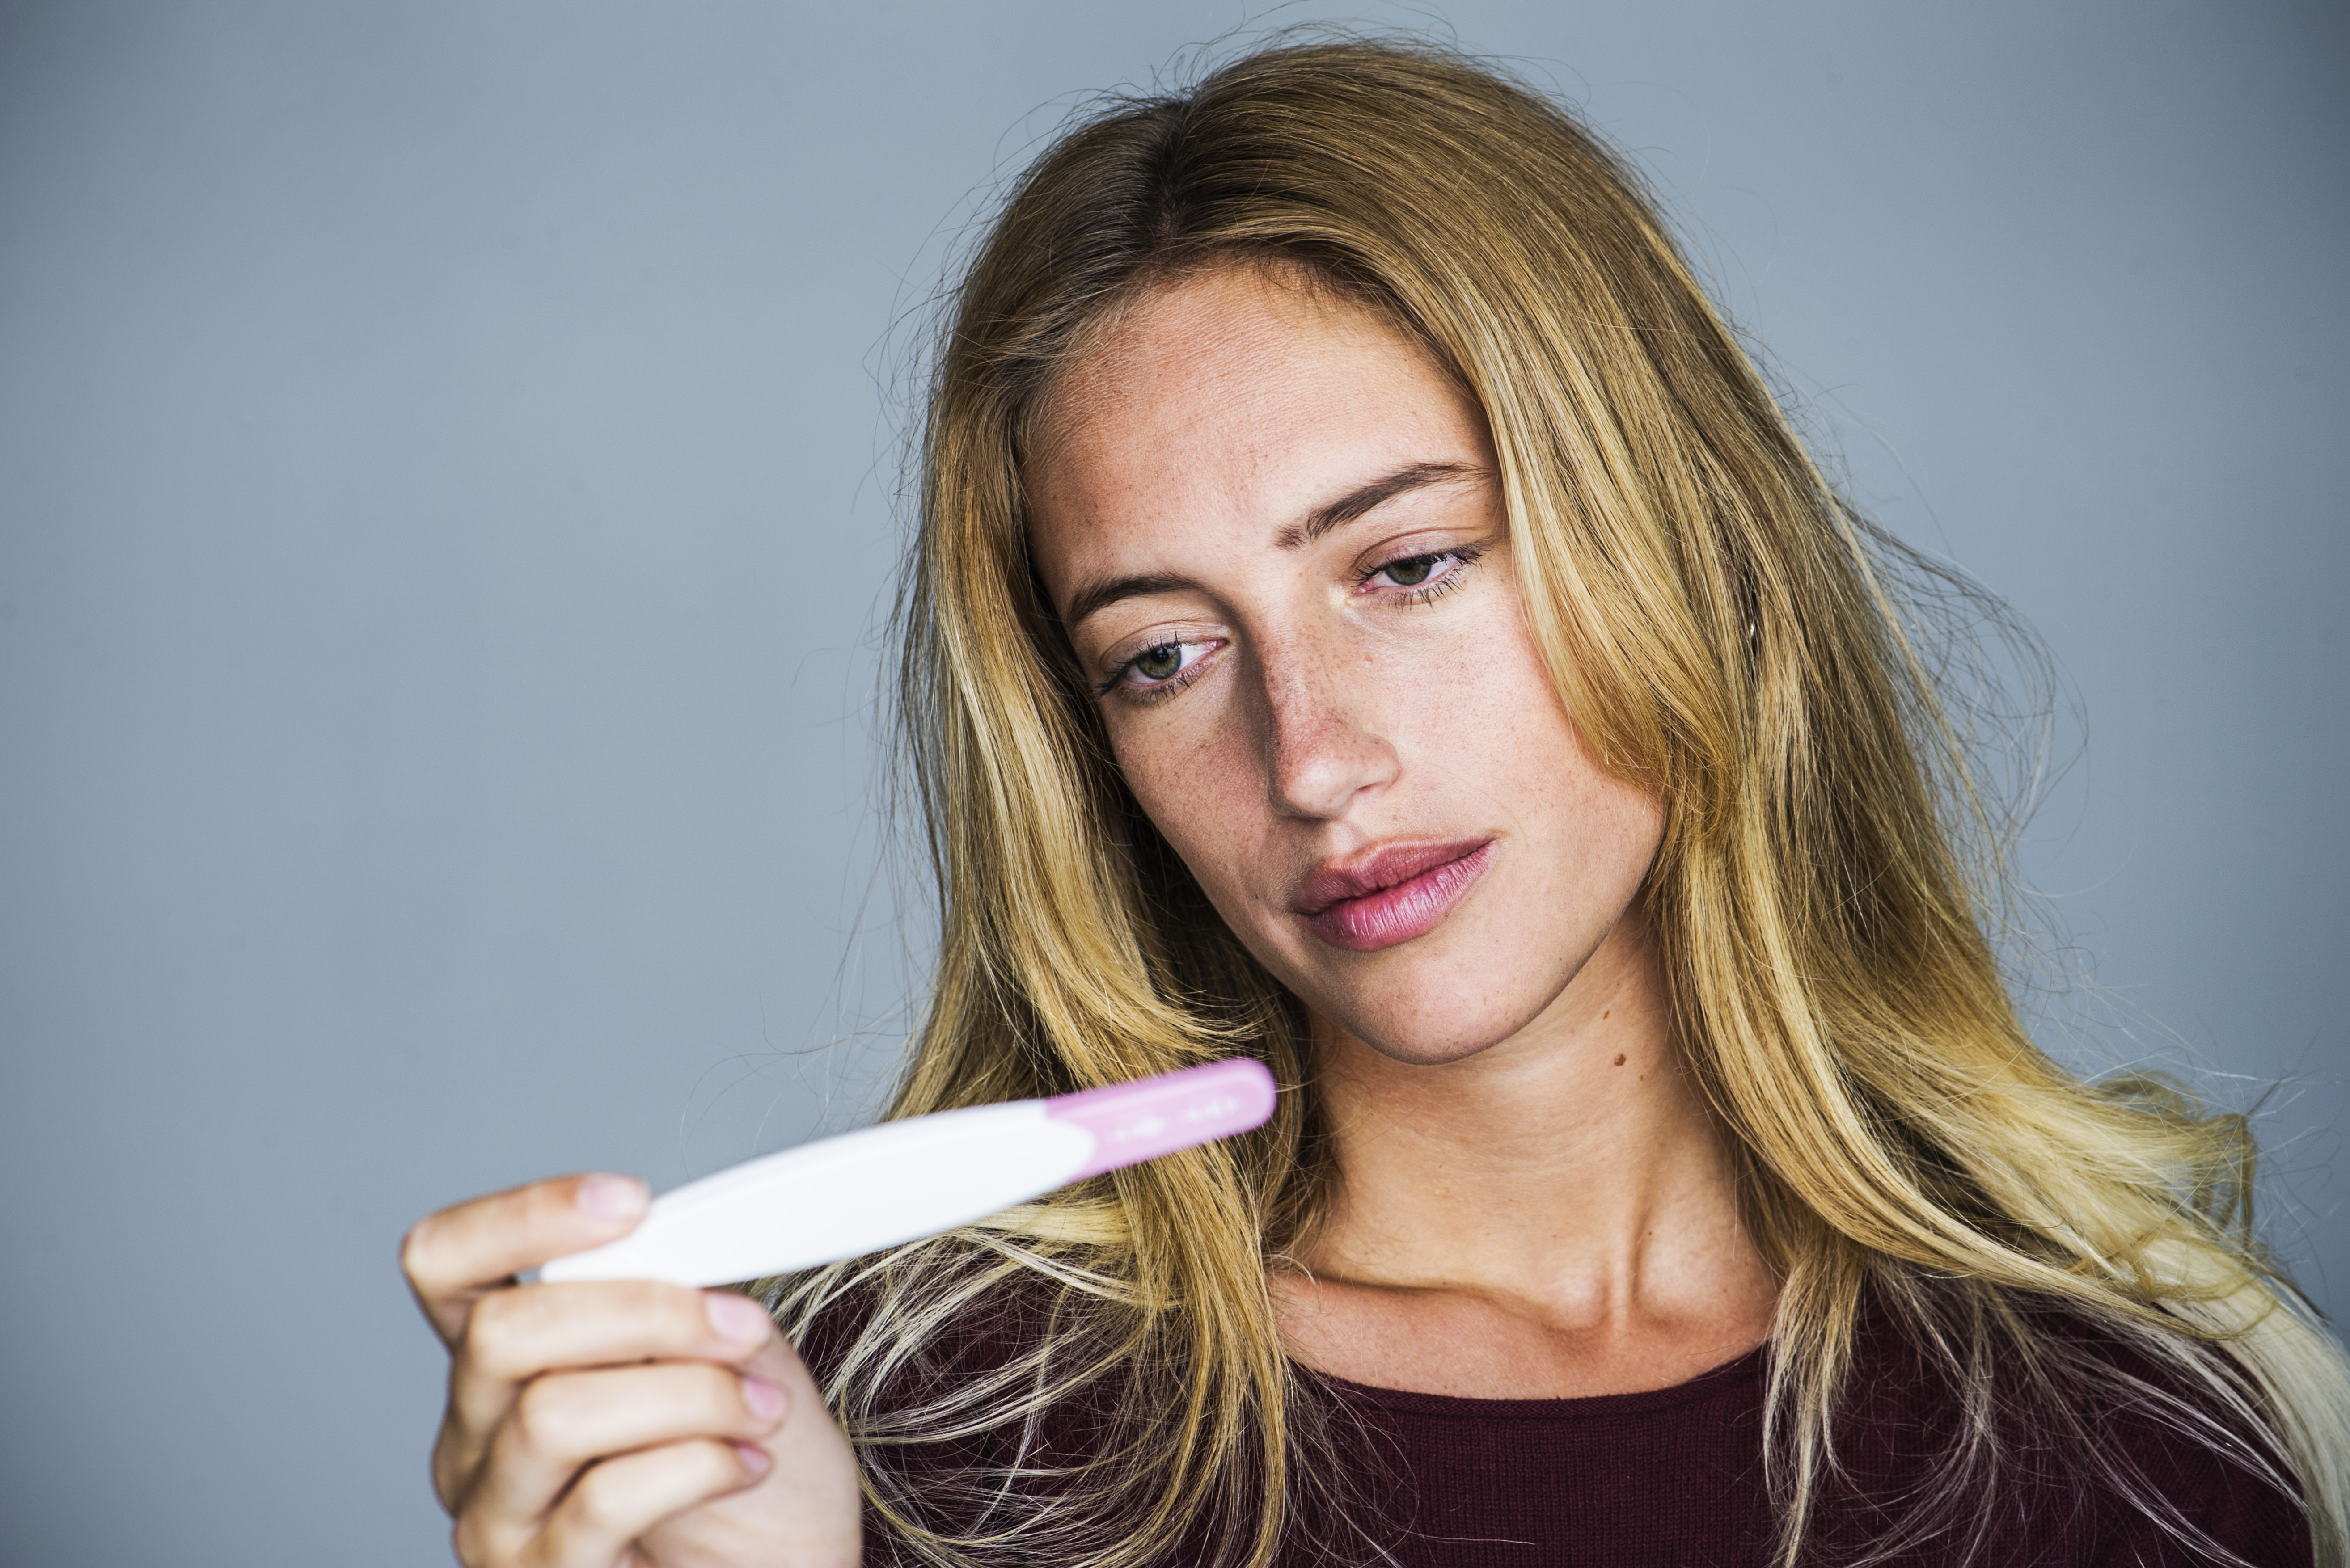 Mujer joven mirando un test de embarazo con expresión decepcionada | Foto: Getty Images